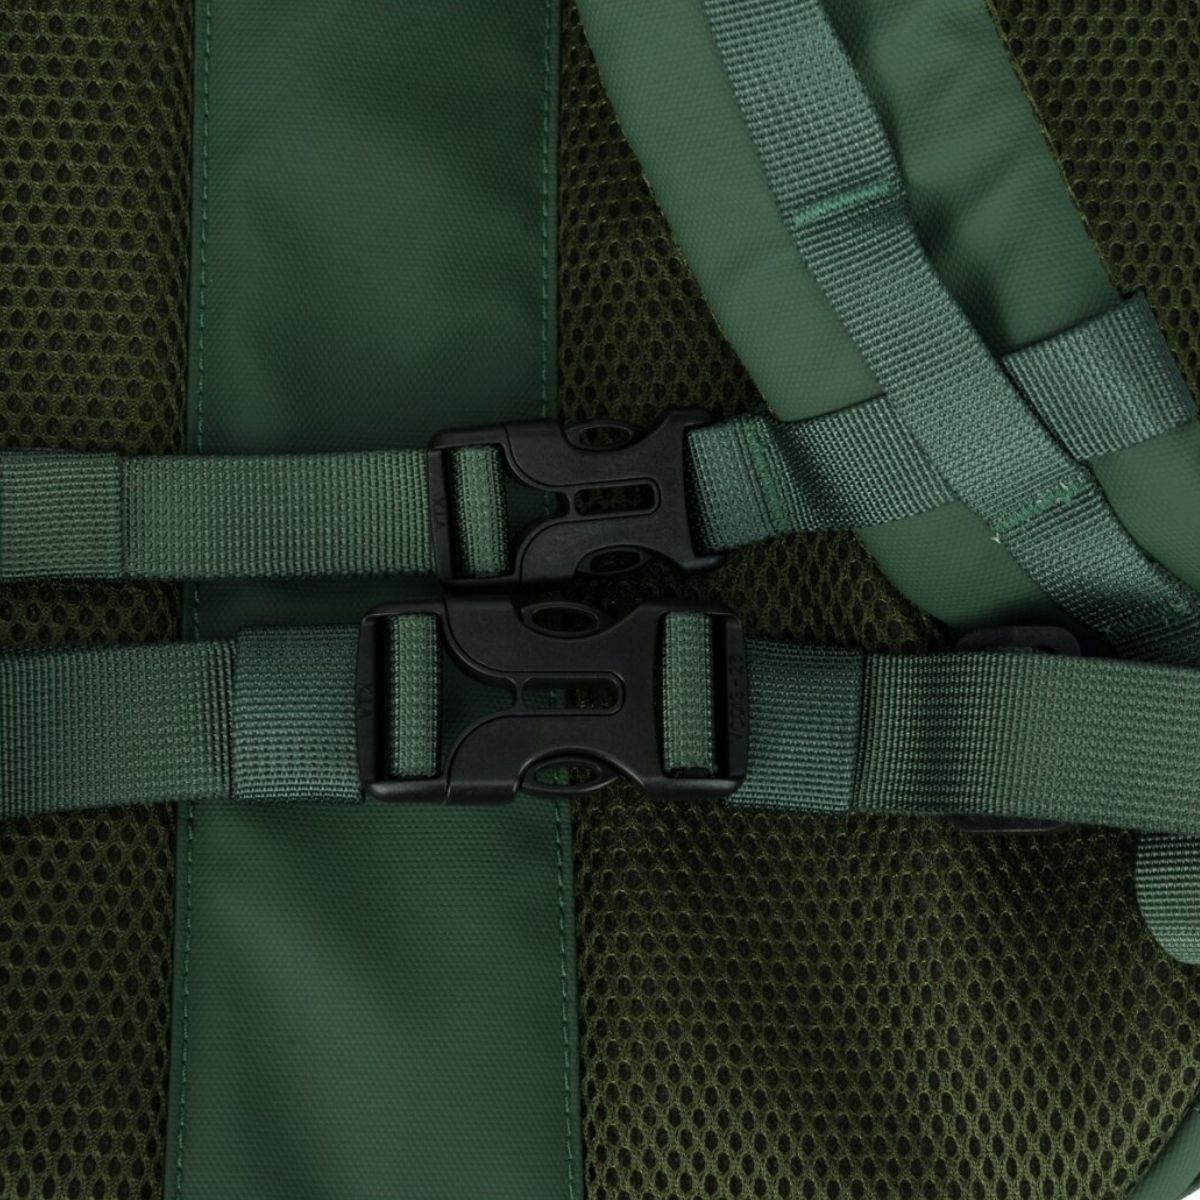 Keswik Zip Top Backpack 22L Green - Rucksack